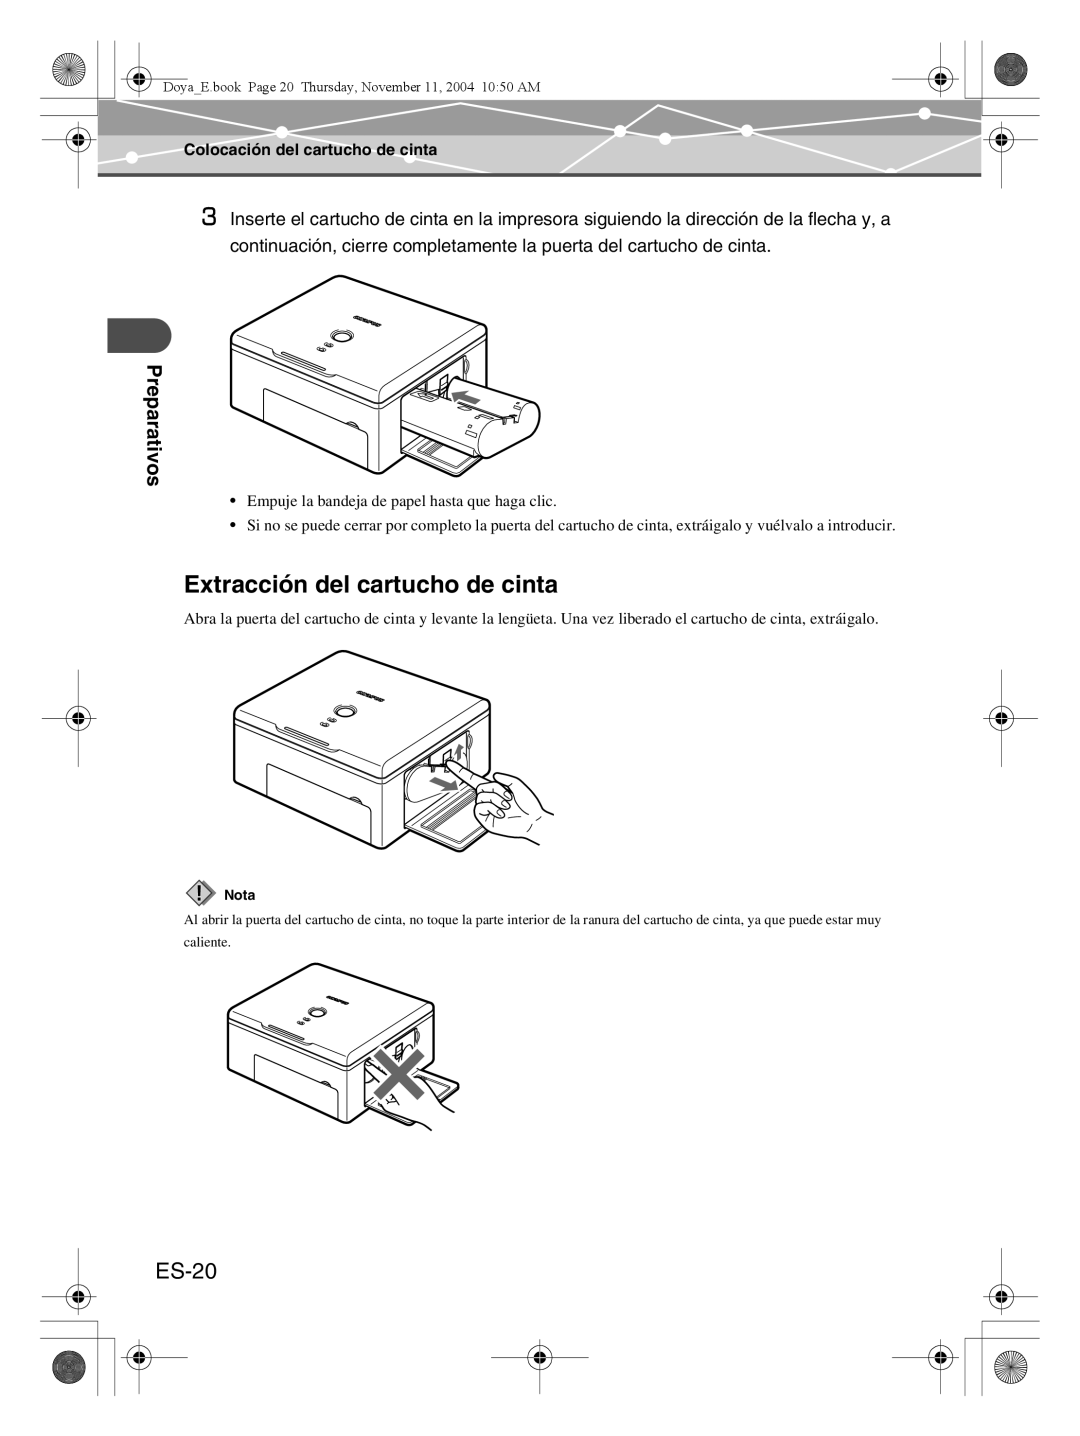 Olympus P-S100 user manual Extracción del cartucho de cinta, ES-20, Preparativos, Colocación del cartucho de cinta 